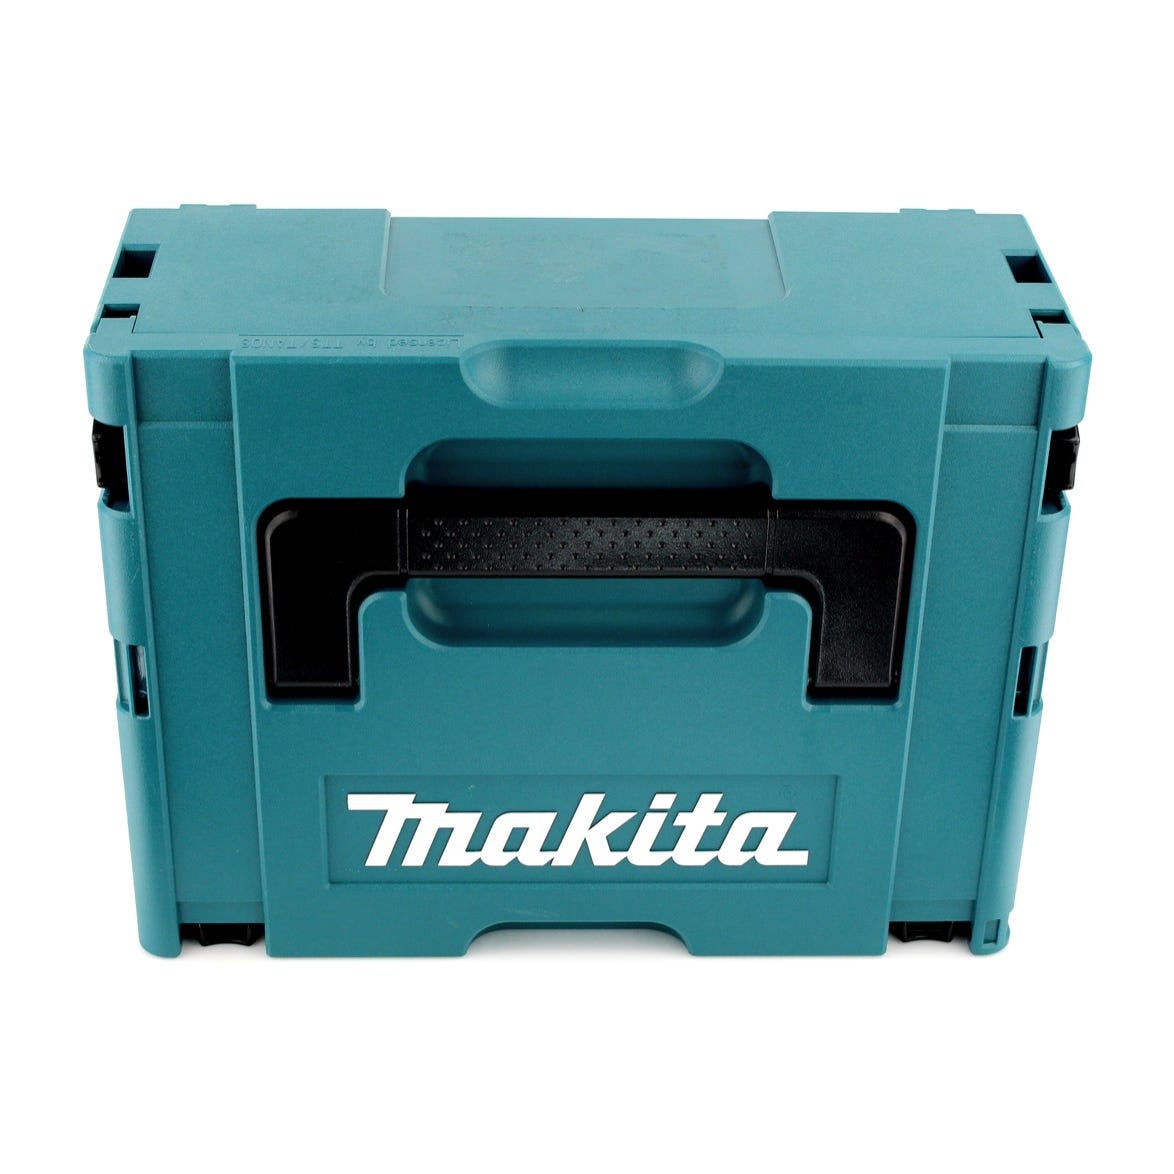 Makita DTD 155 RMJ Visseuse à percussion sans fil 18 V Brushless + Coffret de transport MAKPAC + 2x Batteries BL1840 4,0 Ah + Chargeur DC 18 RC 2